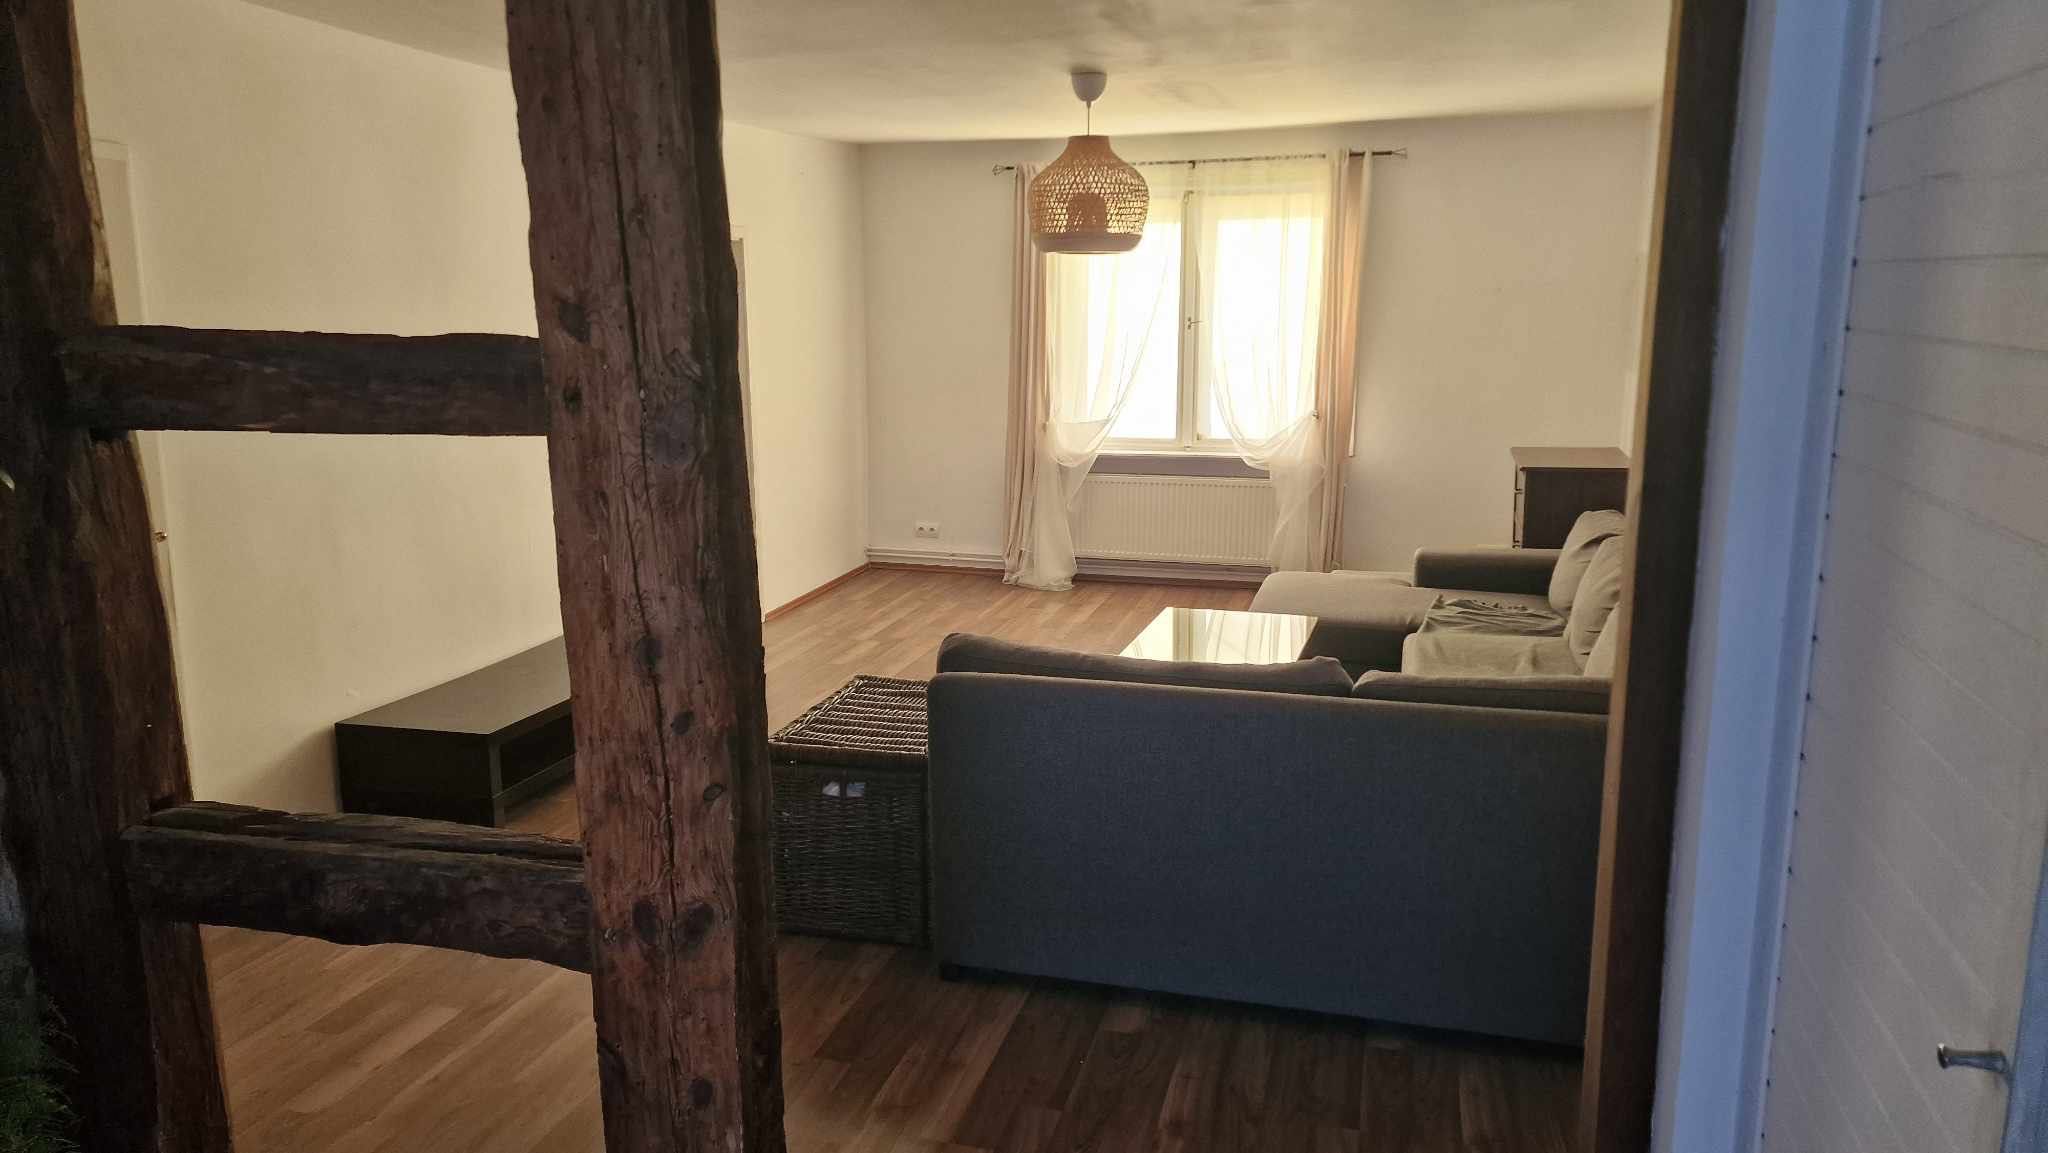 Sprzedam mieszkanie własnościowe w Łabiszynie 136m bezpośrednio